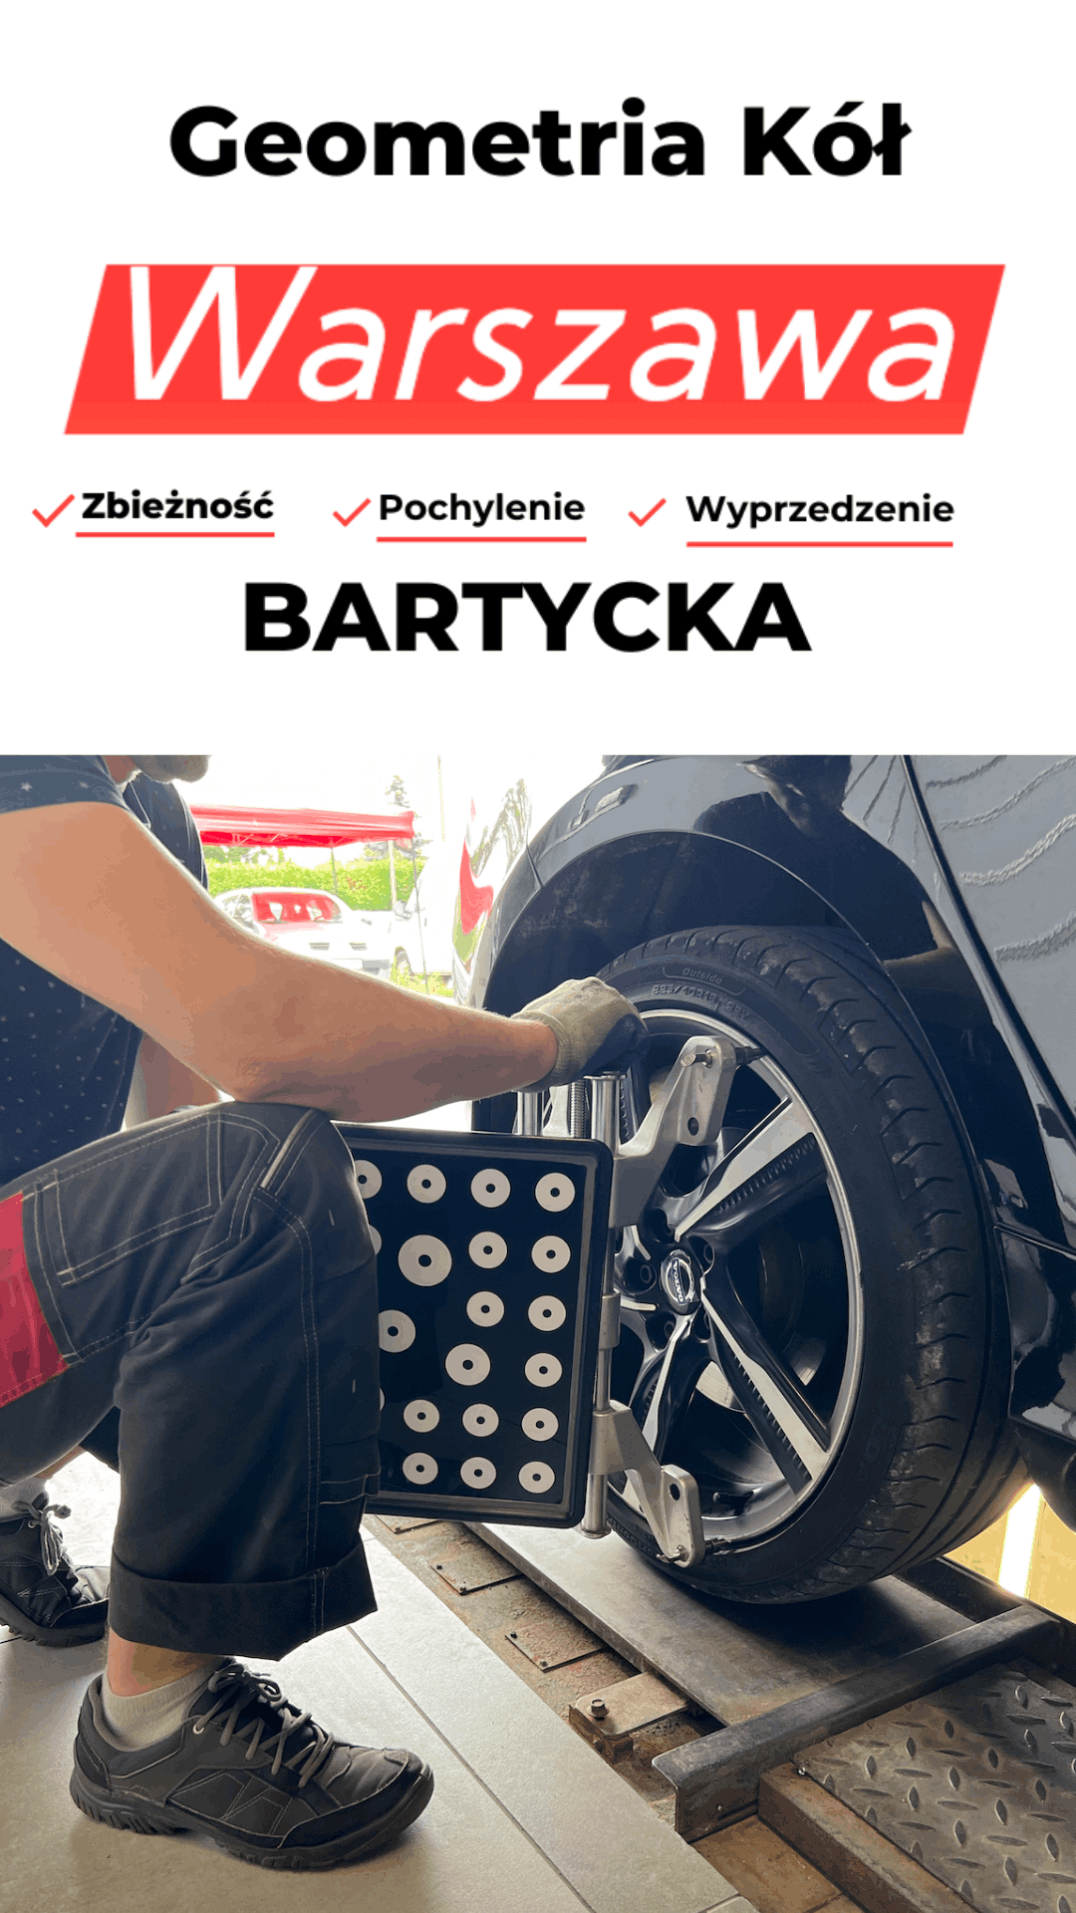 Geometria kół Warszawa Bartycka